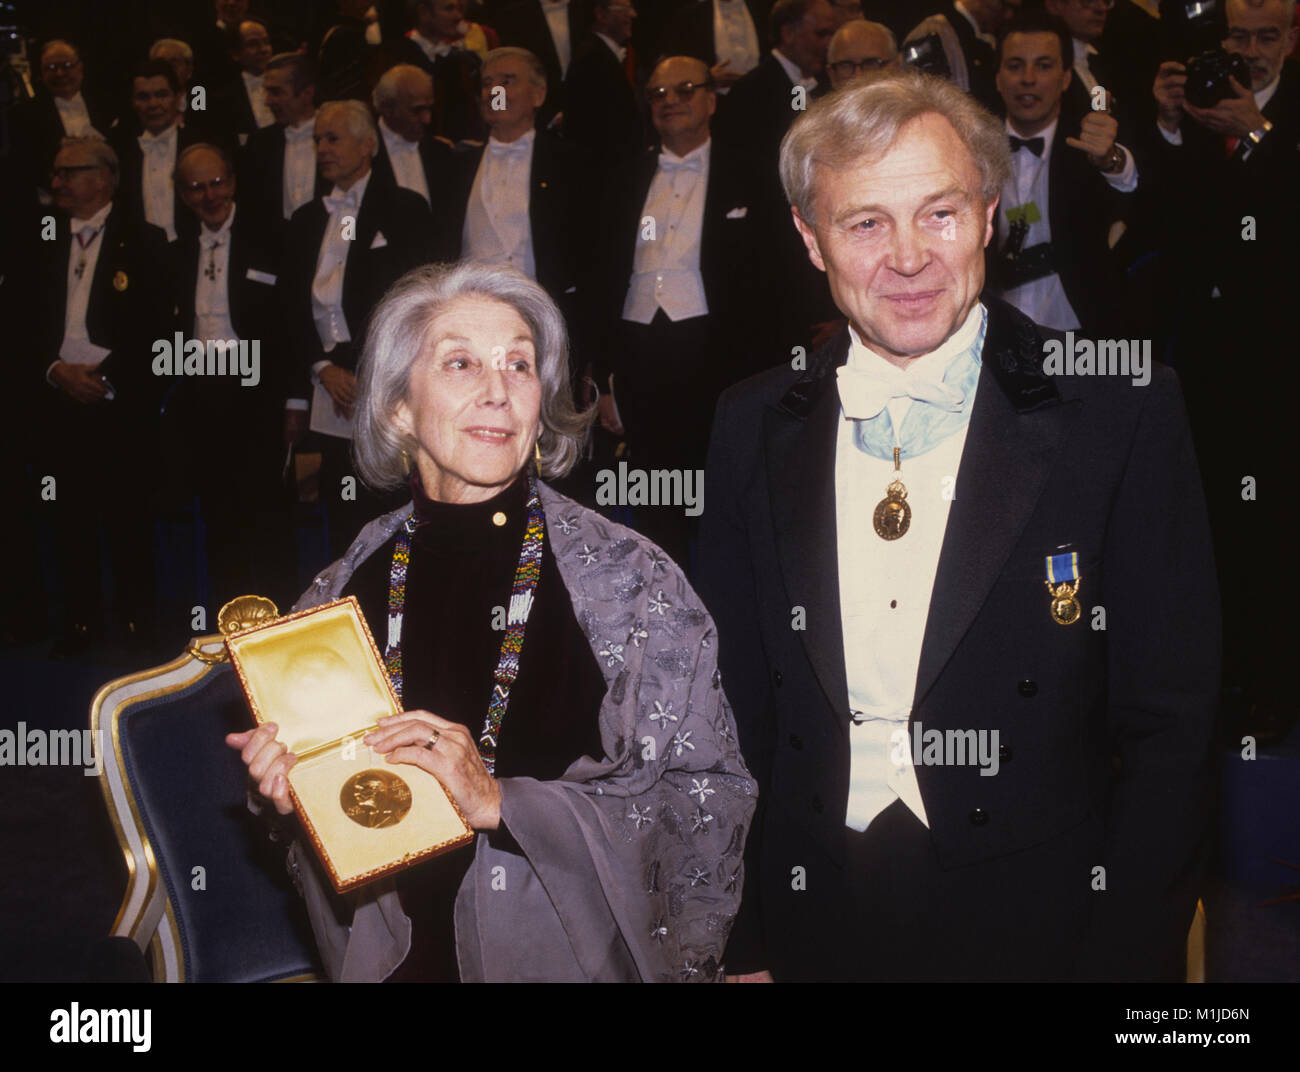 NADINE GORDIMER Auteur de l'Afrique du Sud avec son Prix Nobel de littérature 1991 avec le secrétaire d'académie suédoise Sture Allén Banque D'Images